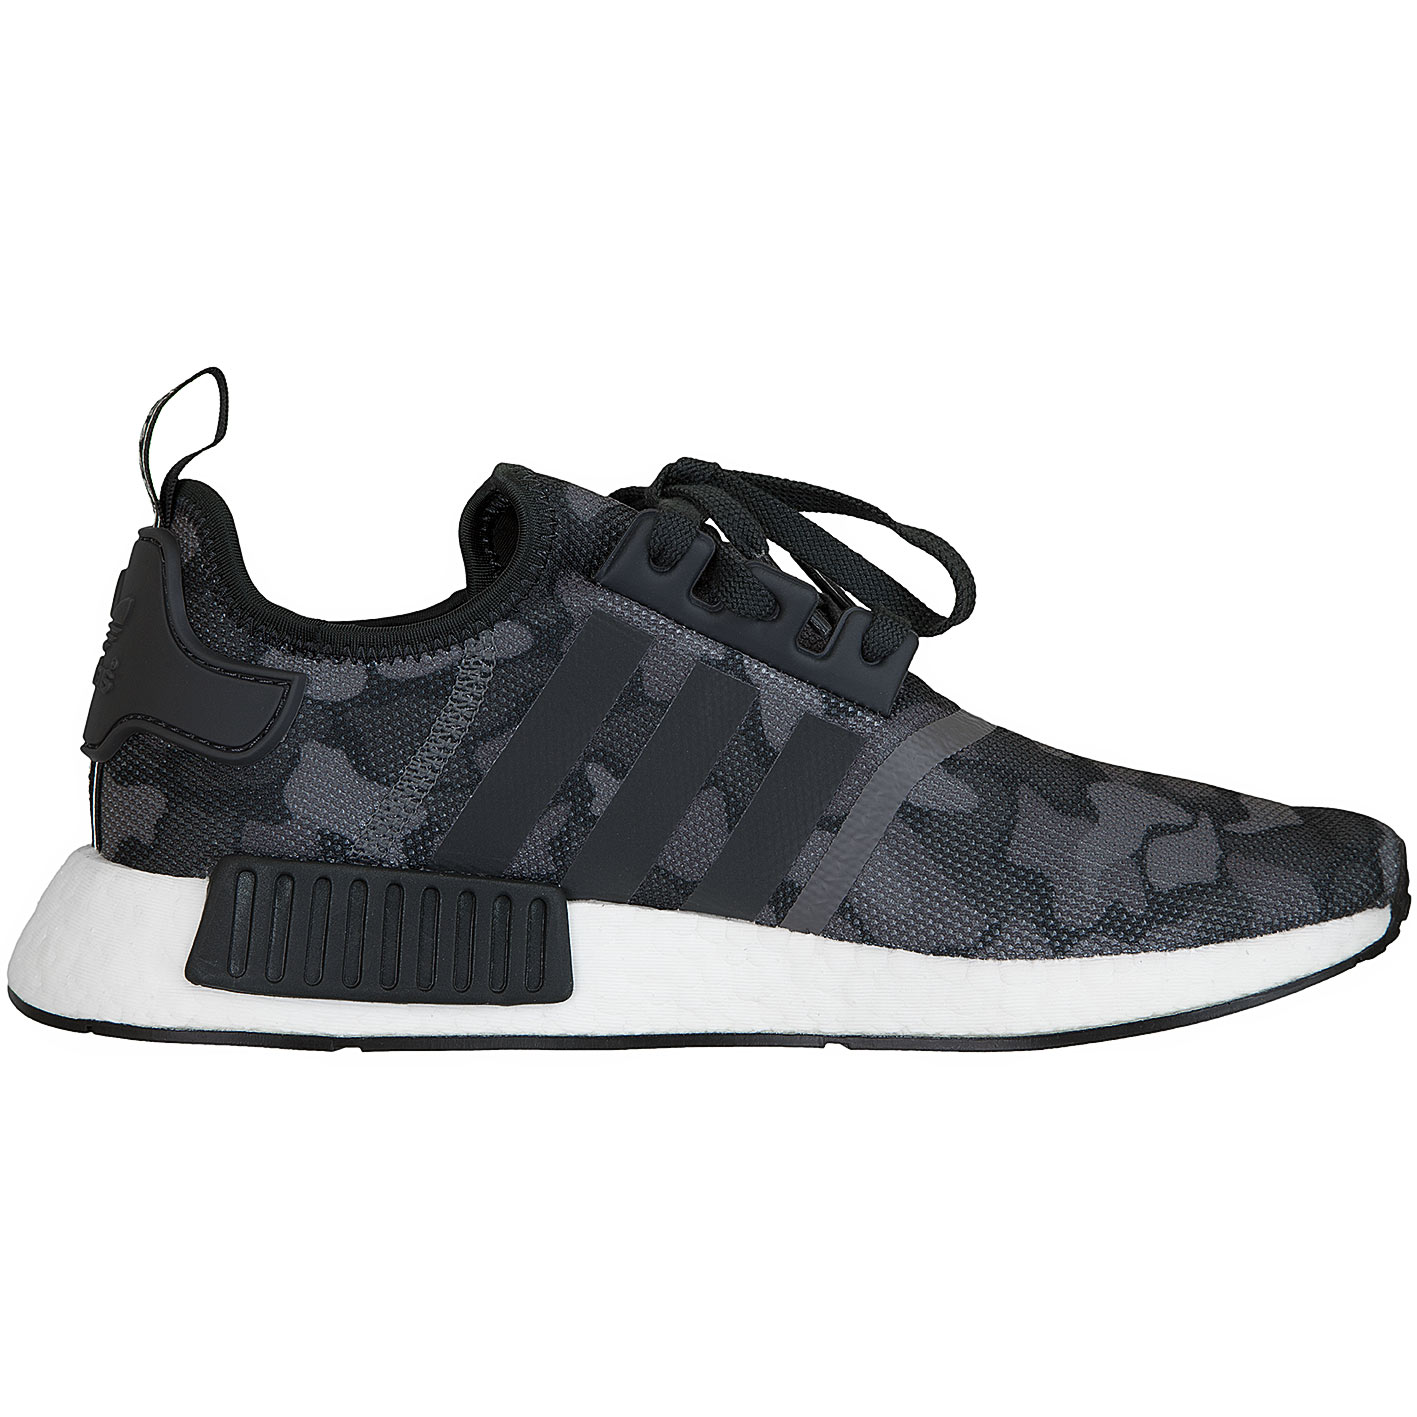 ☆ Adidas Originals Sneaker NMD R1 schwarz/grau - hier bestellen!